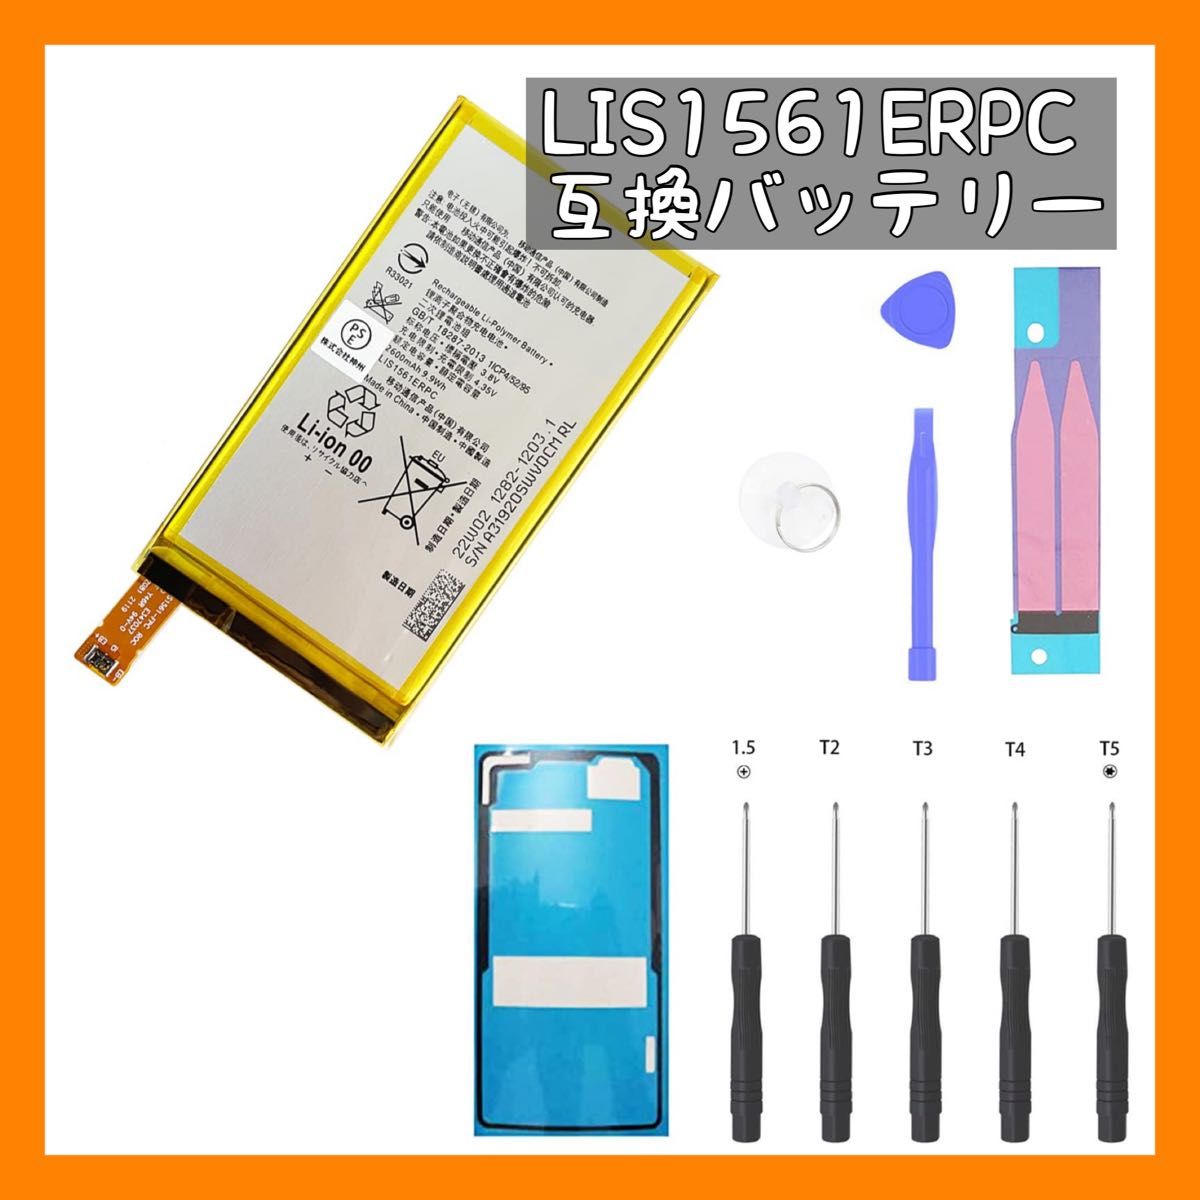  LIS1561ERPC 互換バッテリー 電池パック Xperia Z3 